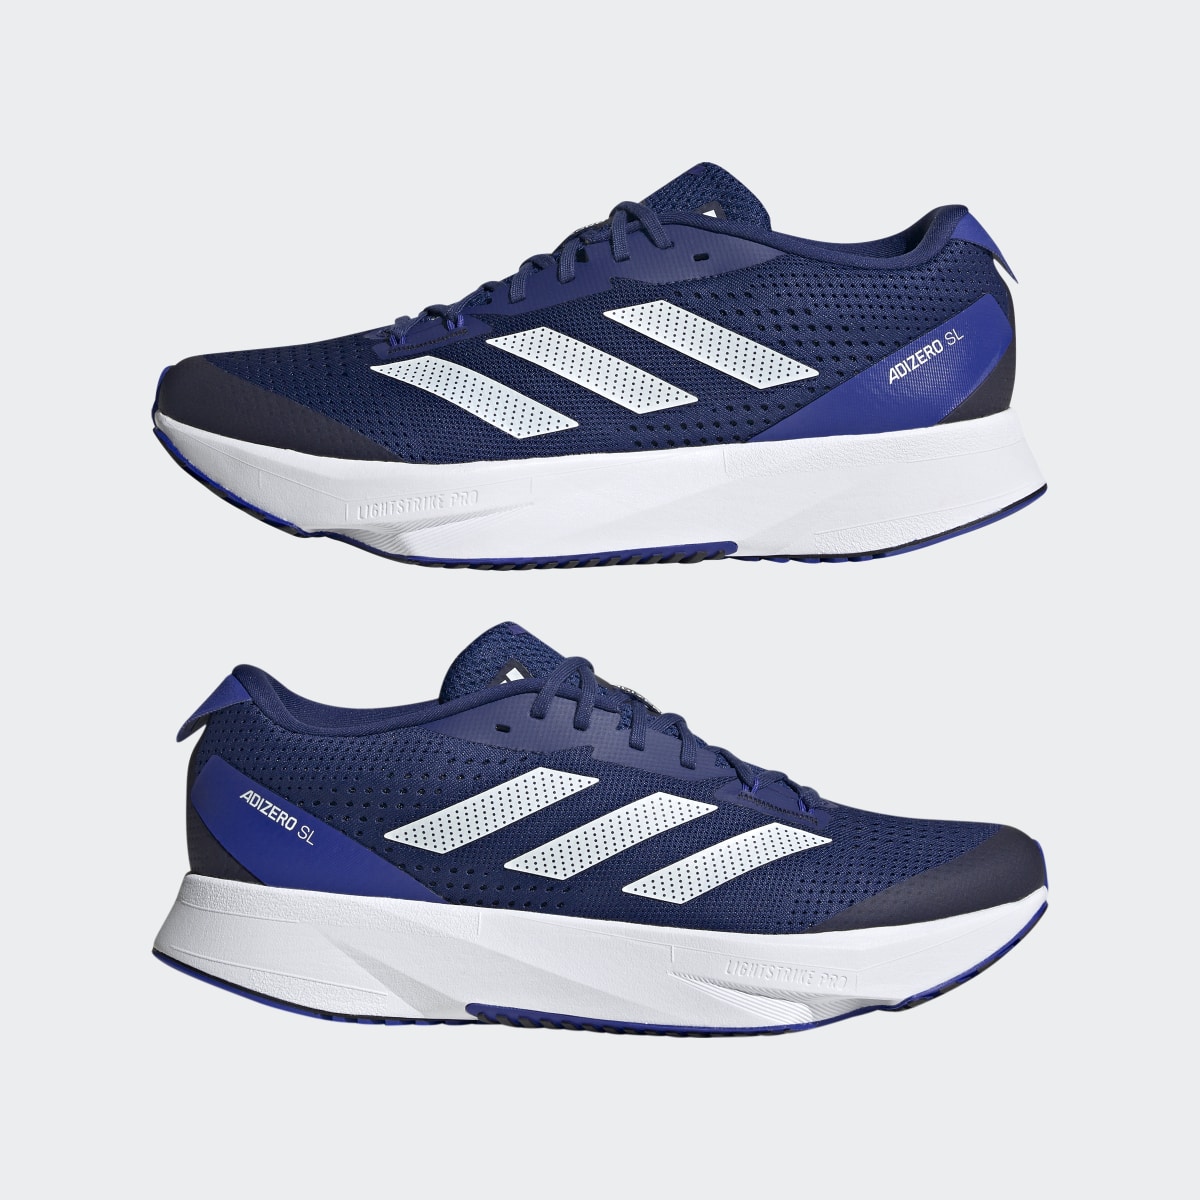 Adidas Adizero SL Running Shoes. 8